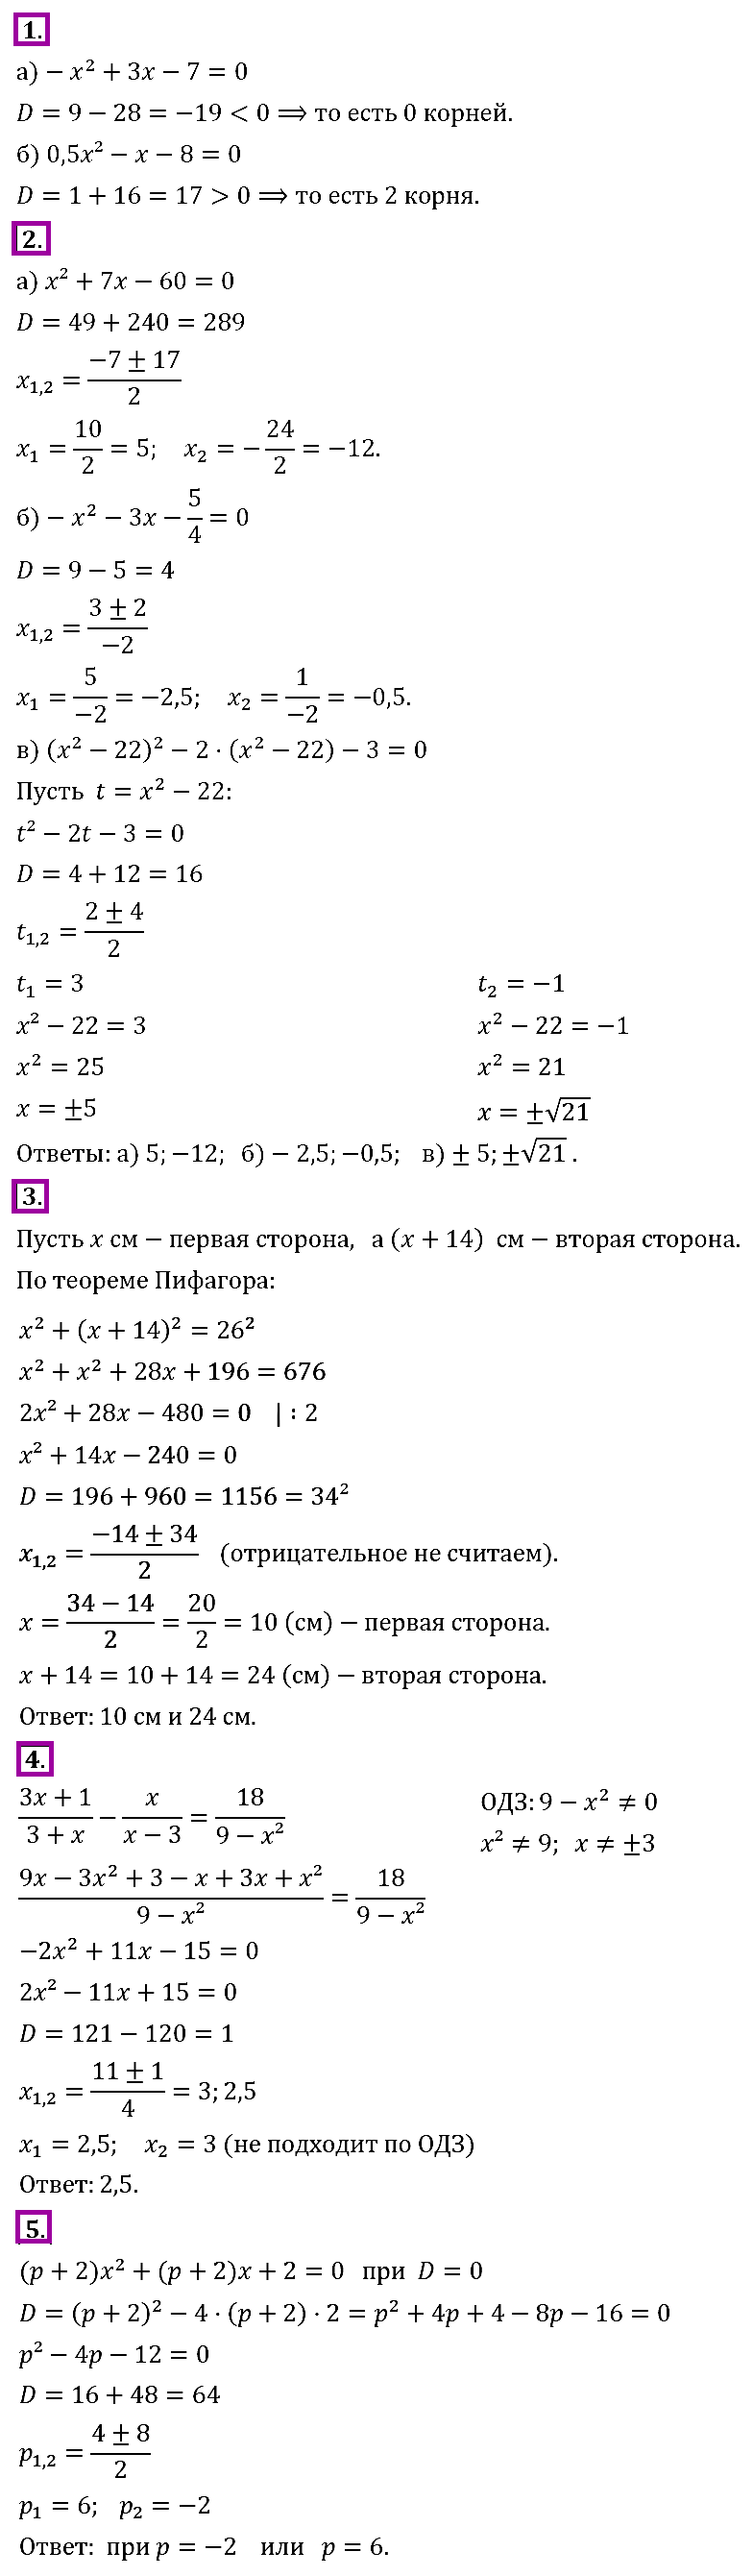 Контрольная работа по алгебре 8 класс номер 6 дробные рациональные уравнения